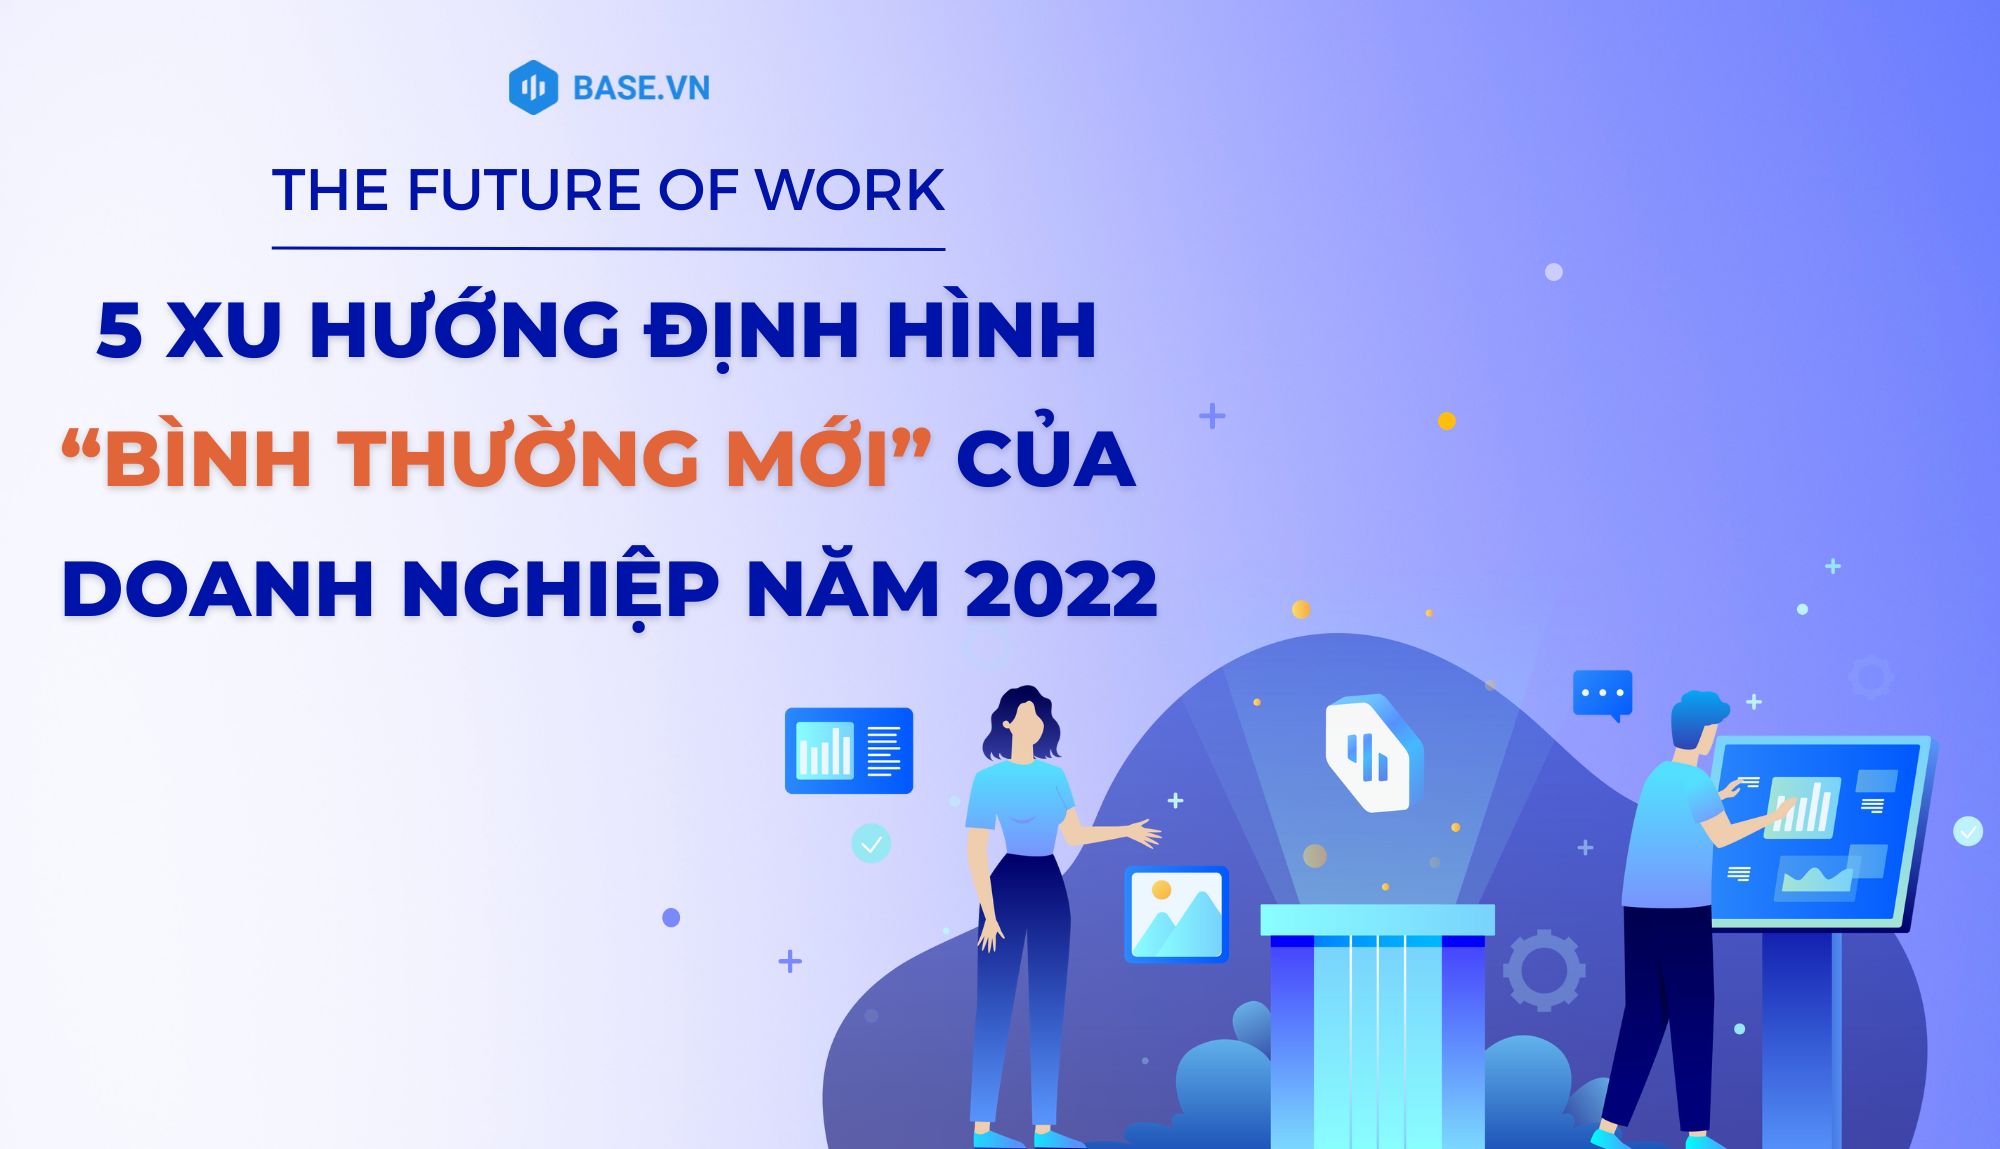 The future of work: 5 xu hướng định hình “bình thường mới” của doanh nghiệp năm 2022